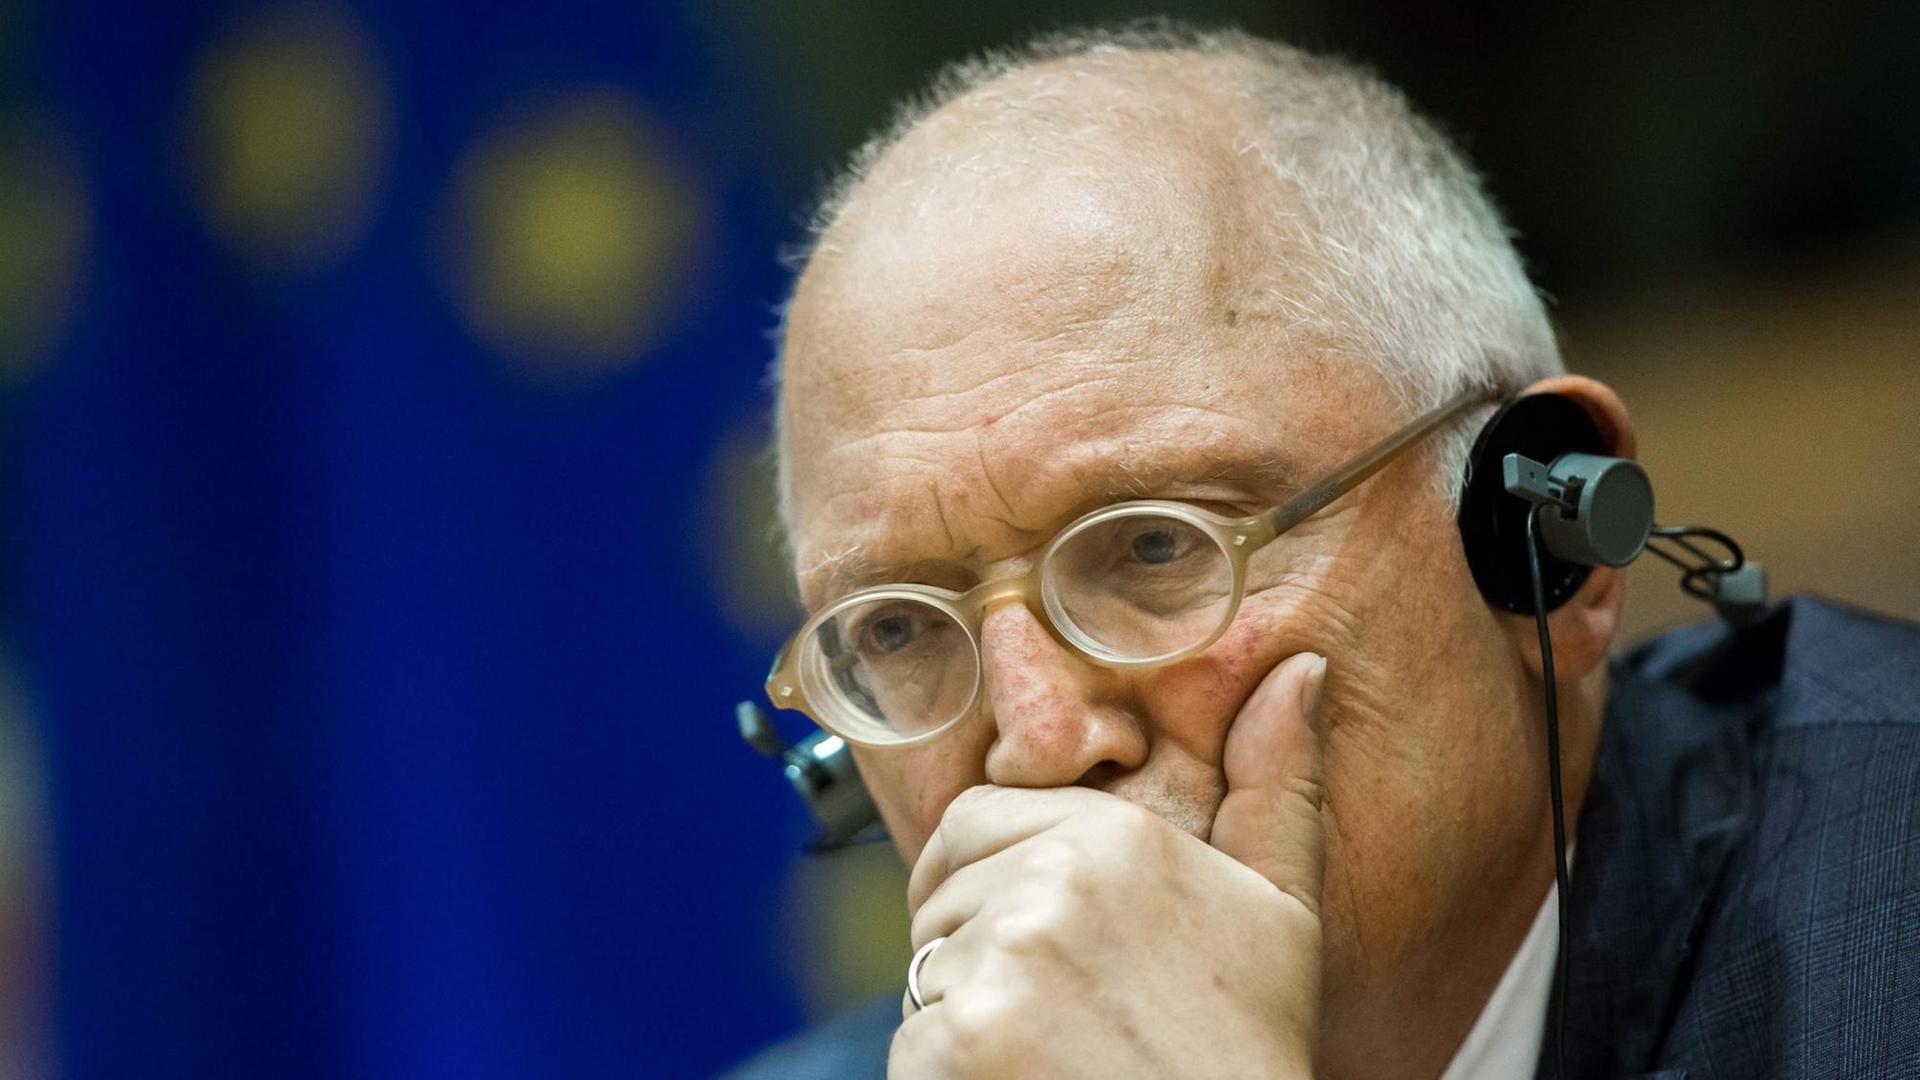 Der frühere EU-Erweiterungskommissar Günter Verheugen während einer öffentlichen Anhörung im Europaparlament in Brüssel